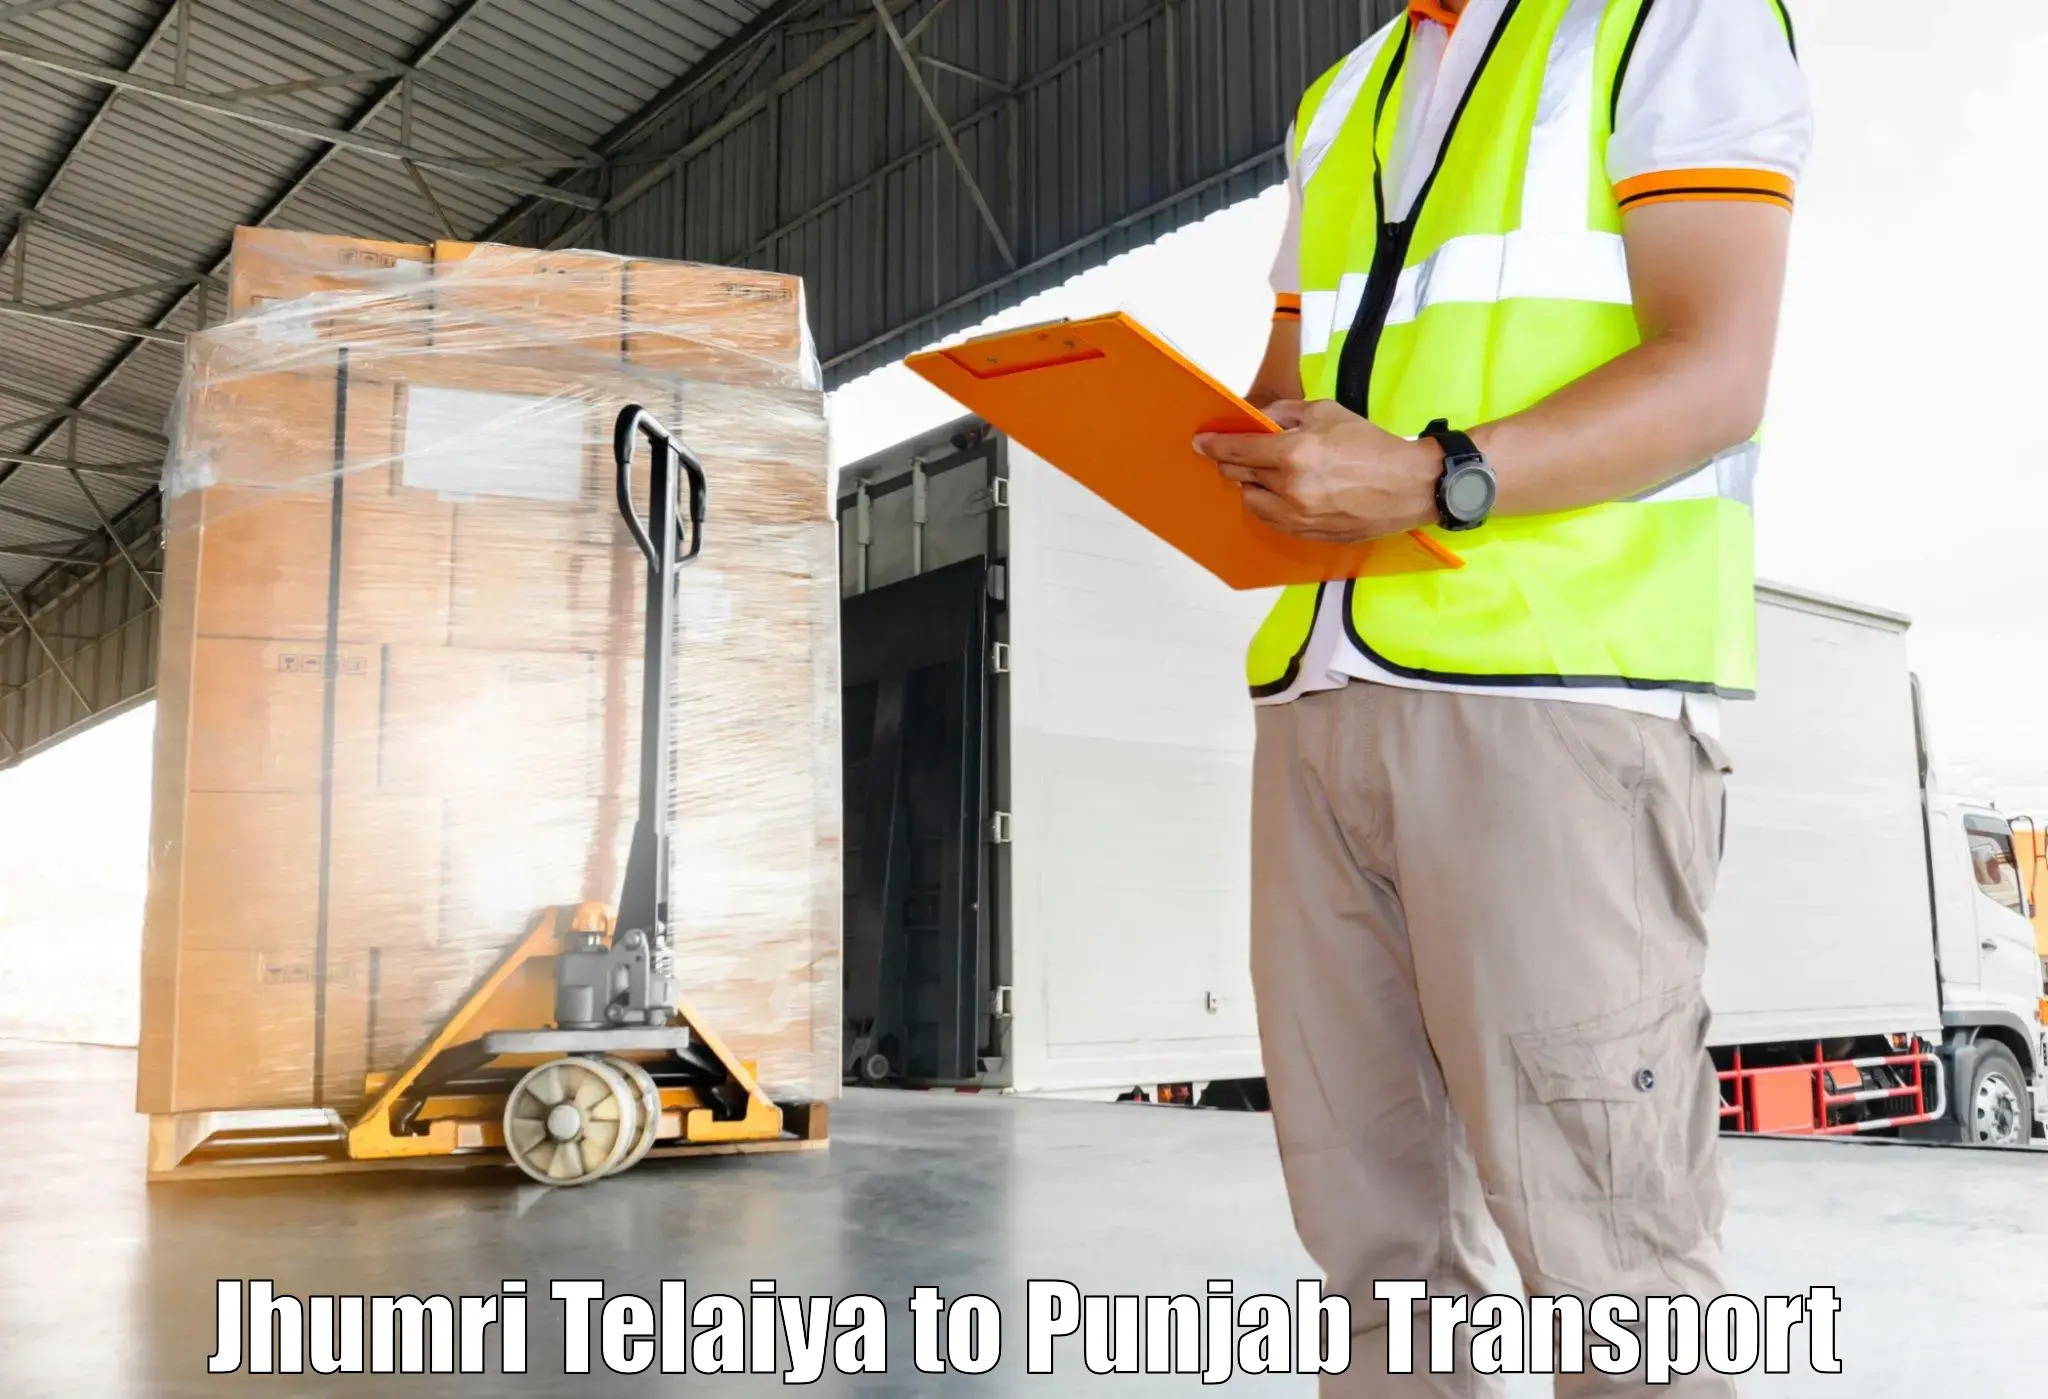 Furniture transport service Jhumri Telaiya to Bathinda